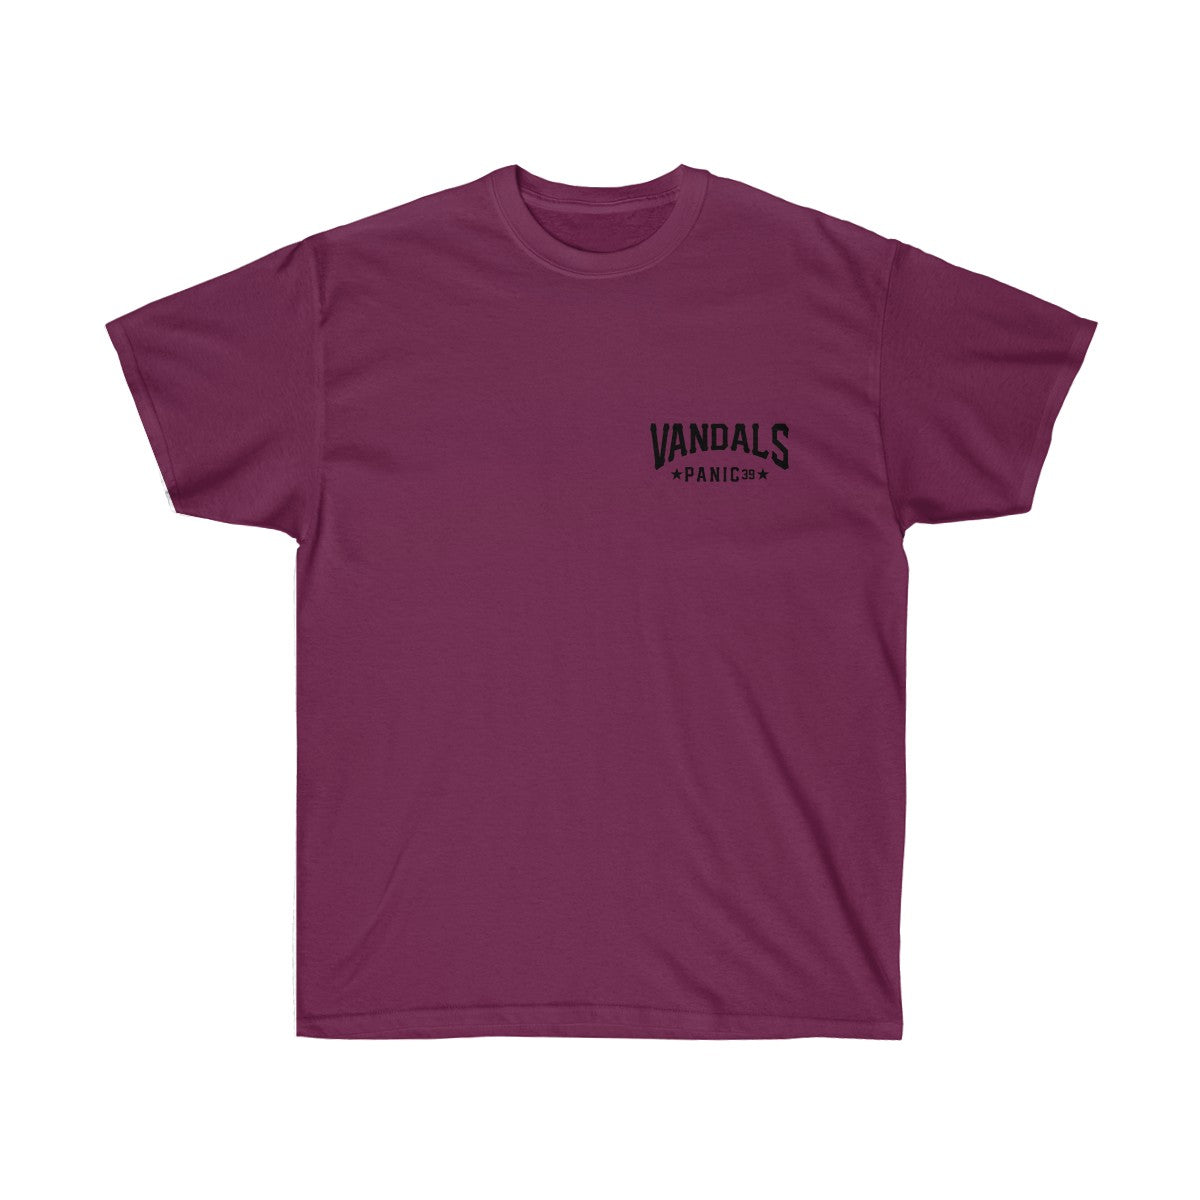 Panic 39 Mens Vandals T-Shirt - Black Print - hip hop clothing